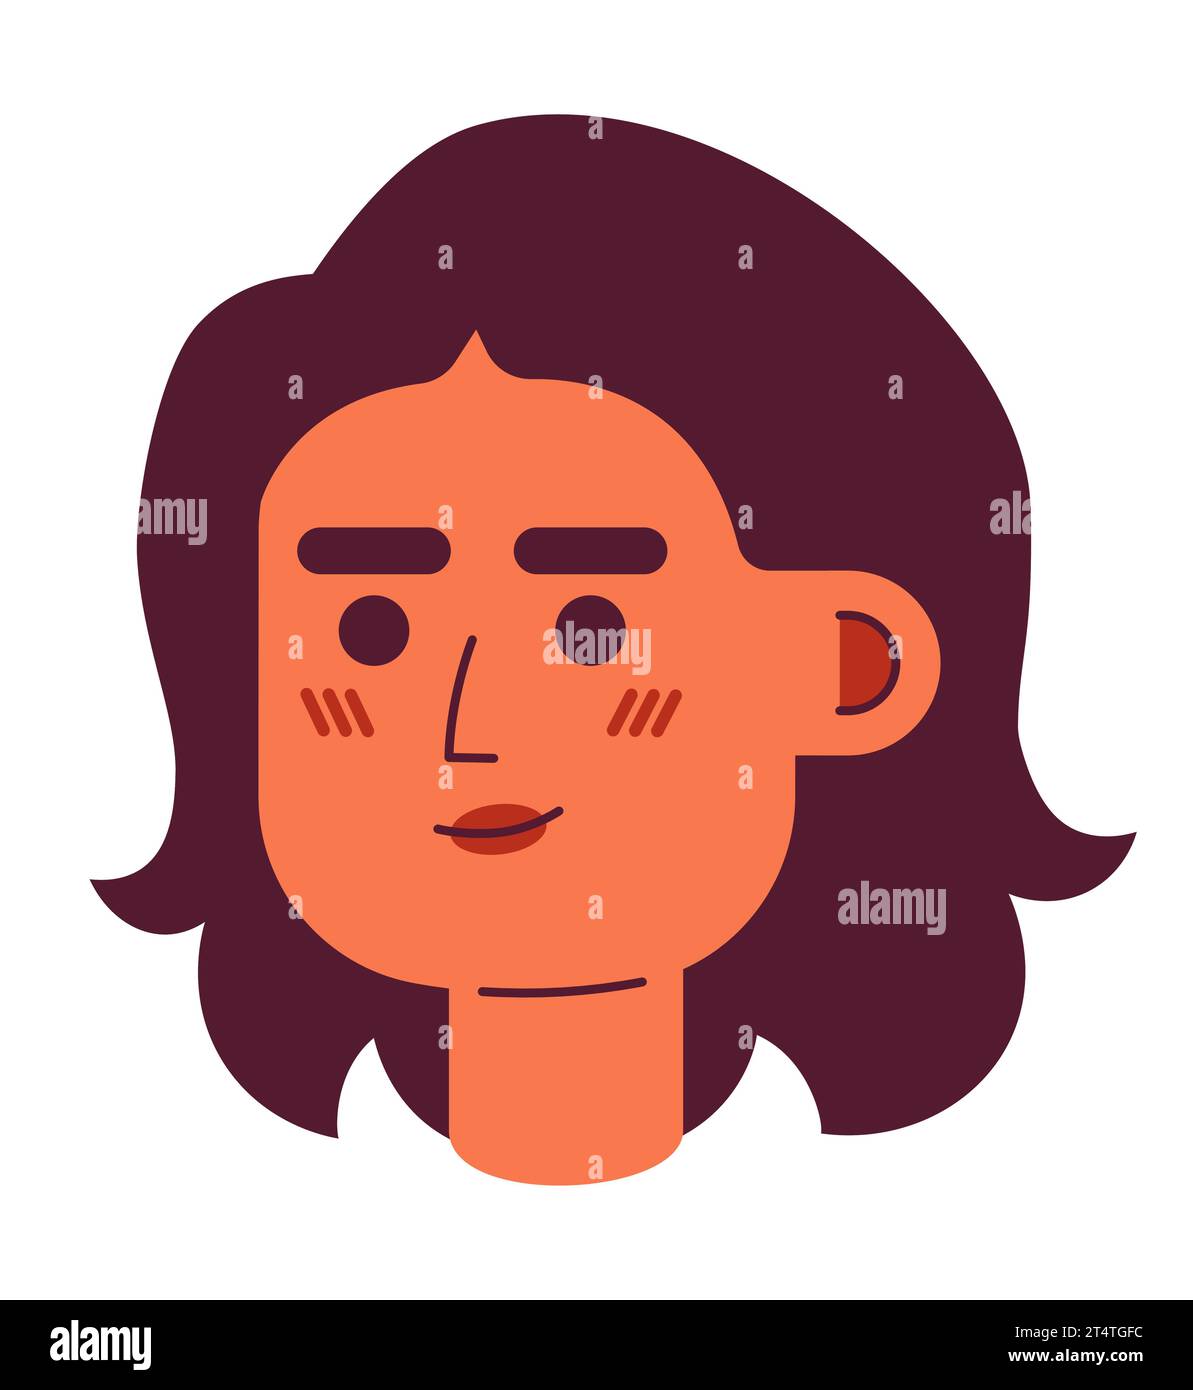 Adulte femme du Moyen-Orient wavy bob haircut illustration d'avatar vectoriel 2D. Illustration de Vecteur